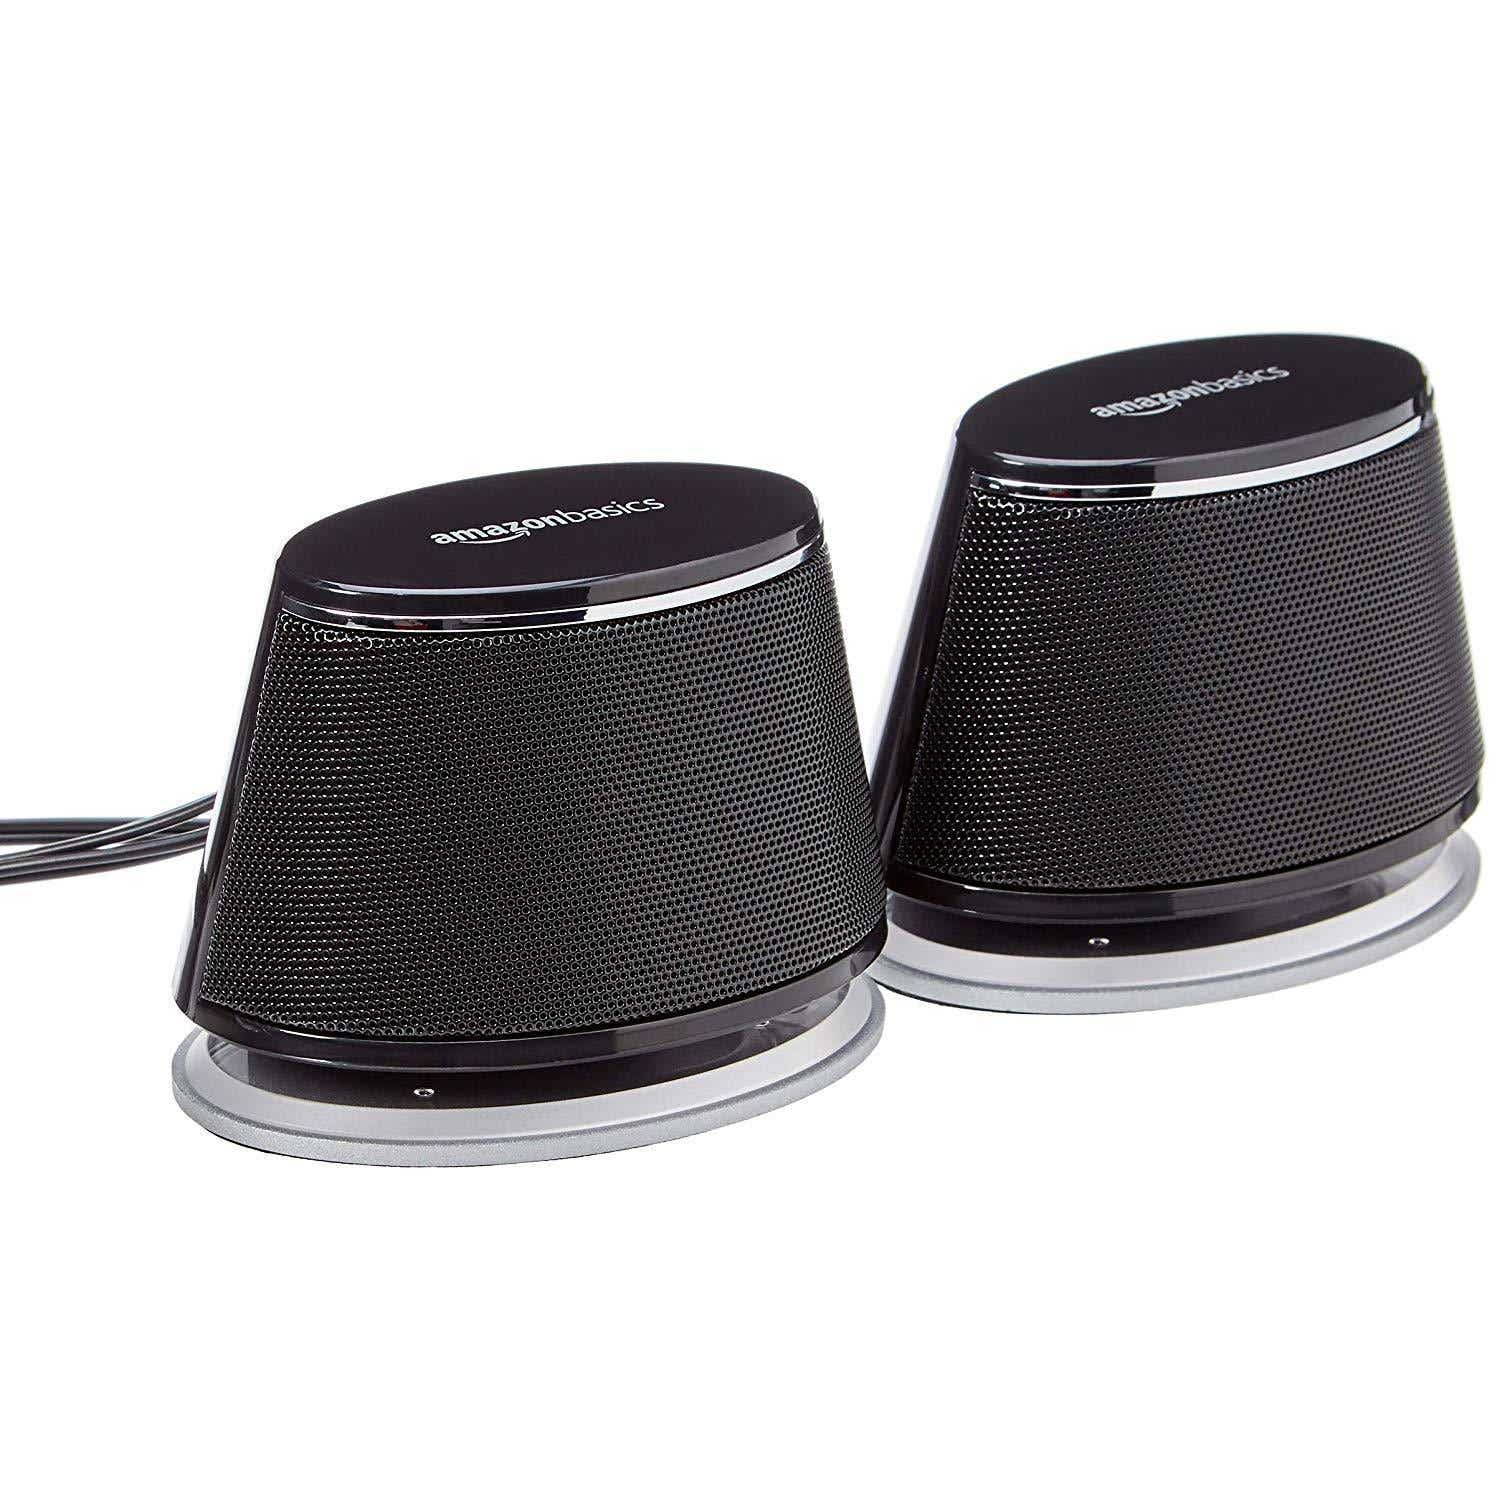 Компьютерные колонки AmazonBasics с питанием от USB и динамическим звуком — лучший недорогой вариант